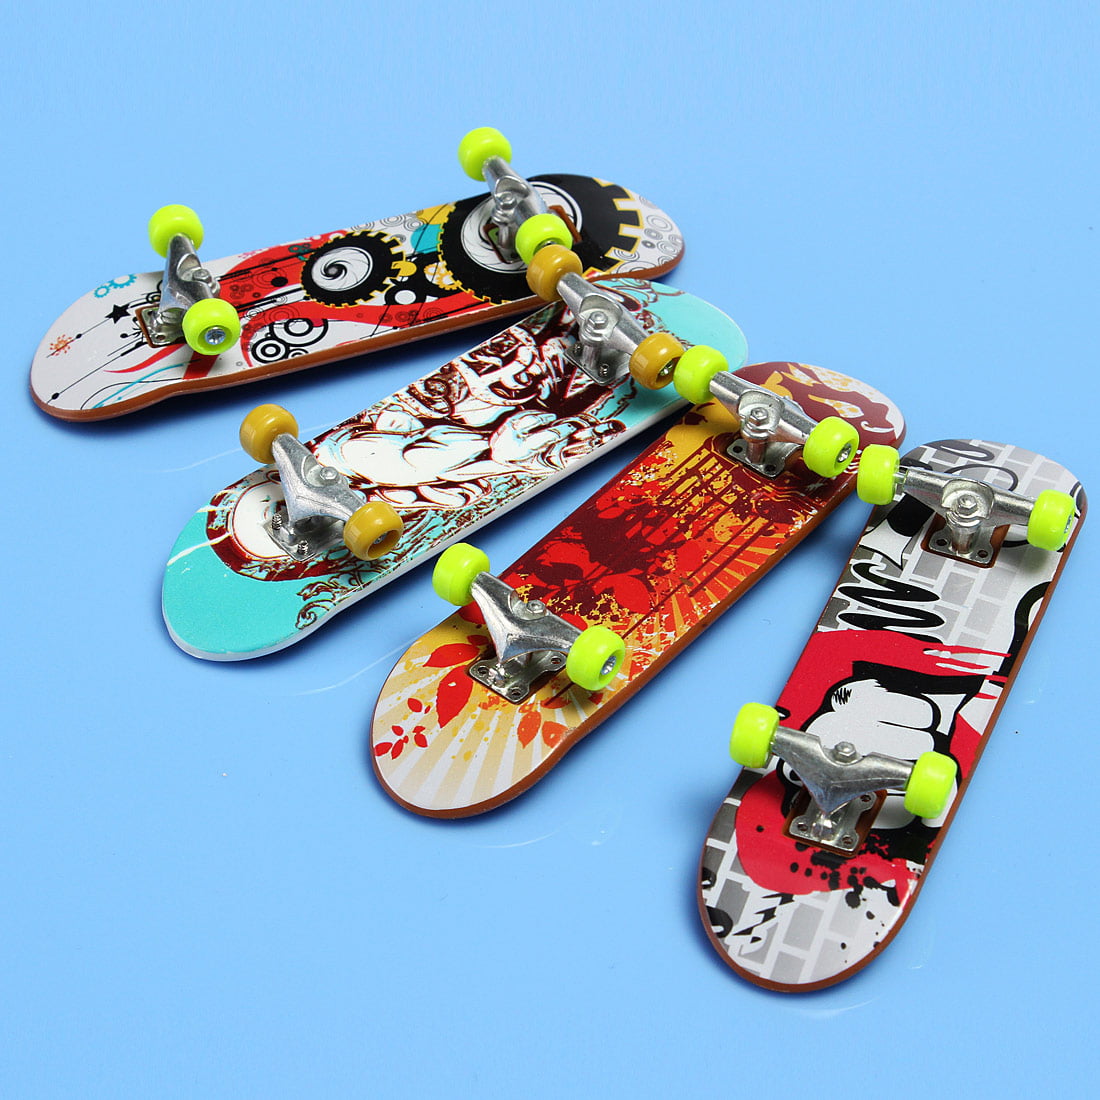 Finger Board Tech Deck Truck Skateboard Boy Kids Children Party Toy Xmas Gifts 